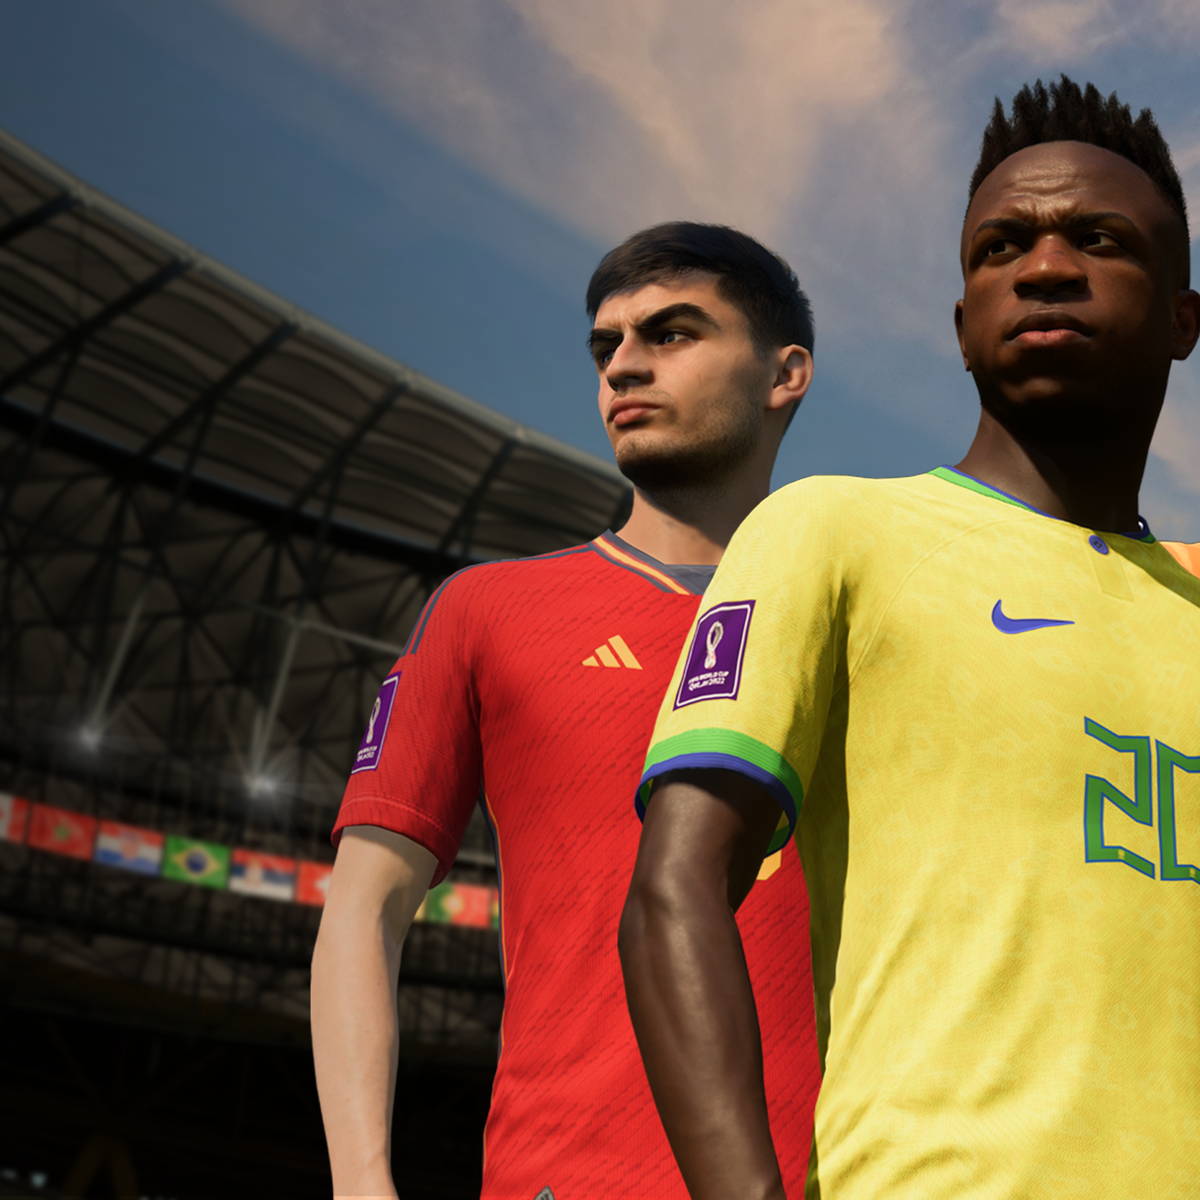 Copa do Mundo no FIFA 23 terá um novo modo de jogo - GamesUP